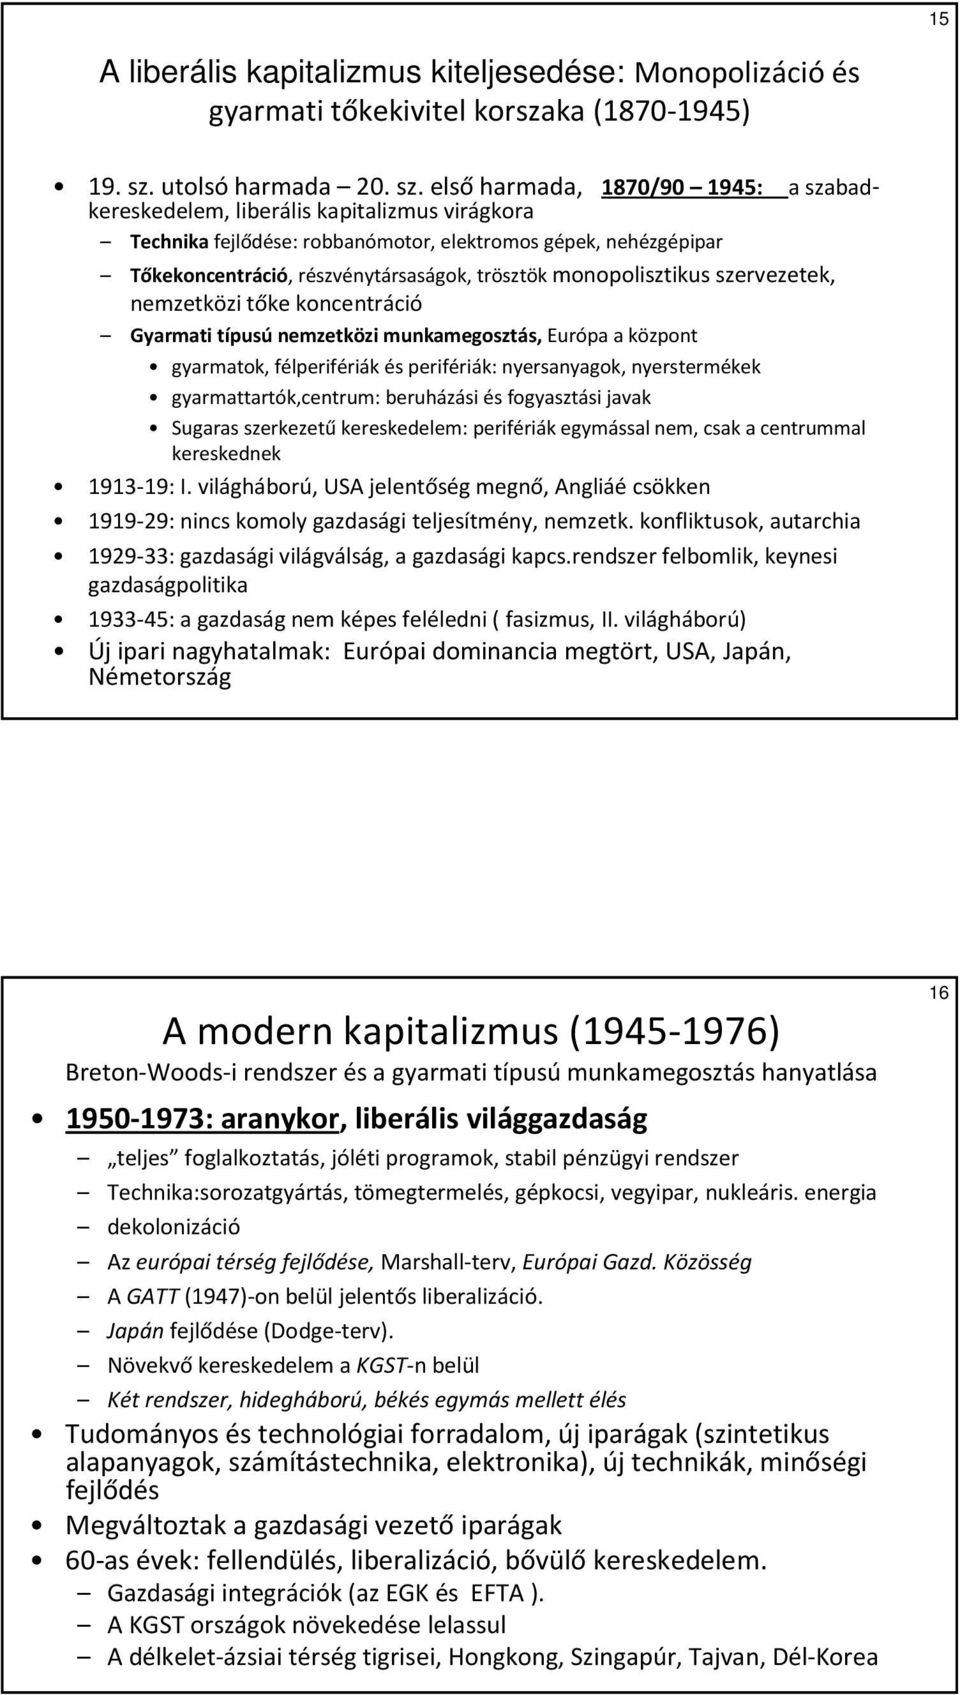 elsőharmada, 1870/90 1945: a szabadkereskedelem, liberális kapitalizmus virágkora Technika fejlődése: robbanómotor, elektromos gépek, nehézgépipar Tőkekoncentráció, részvénytársaságok, trösztök